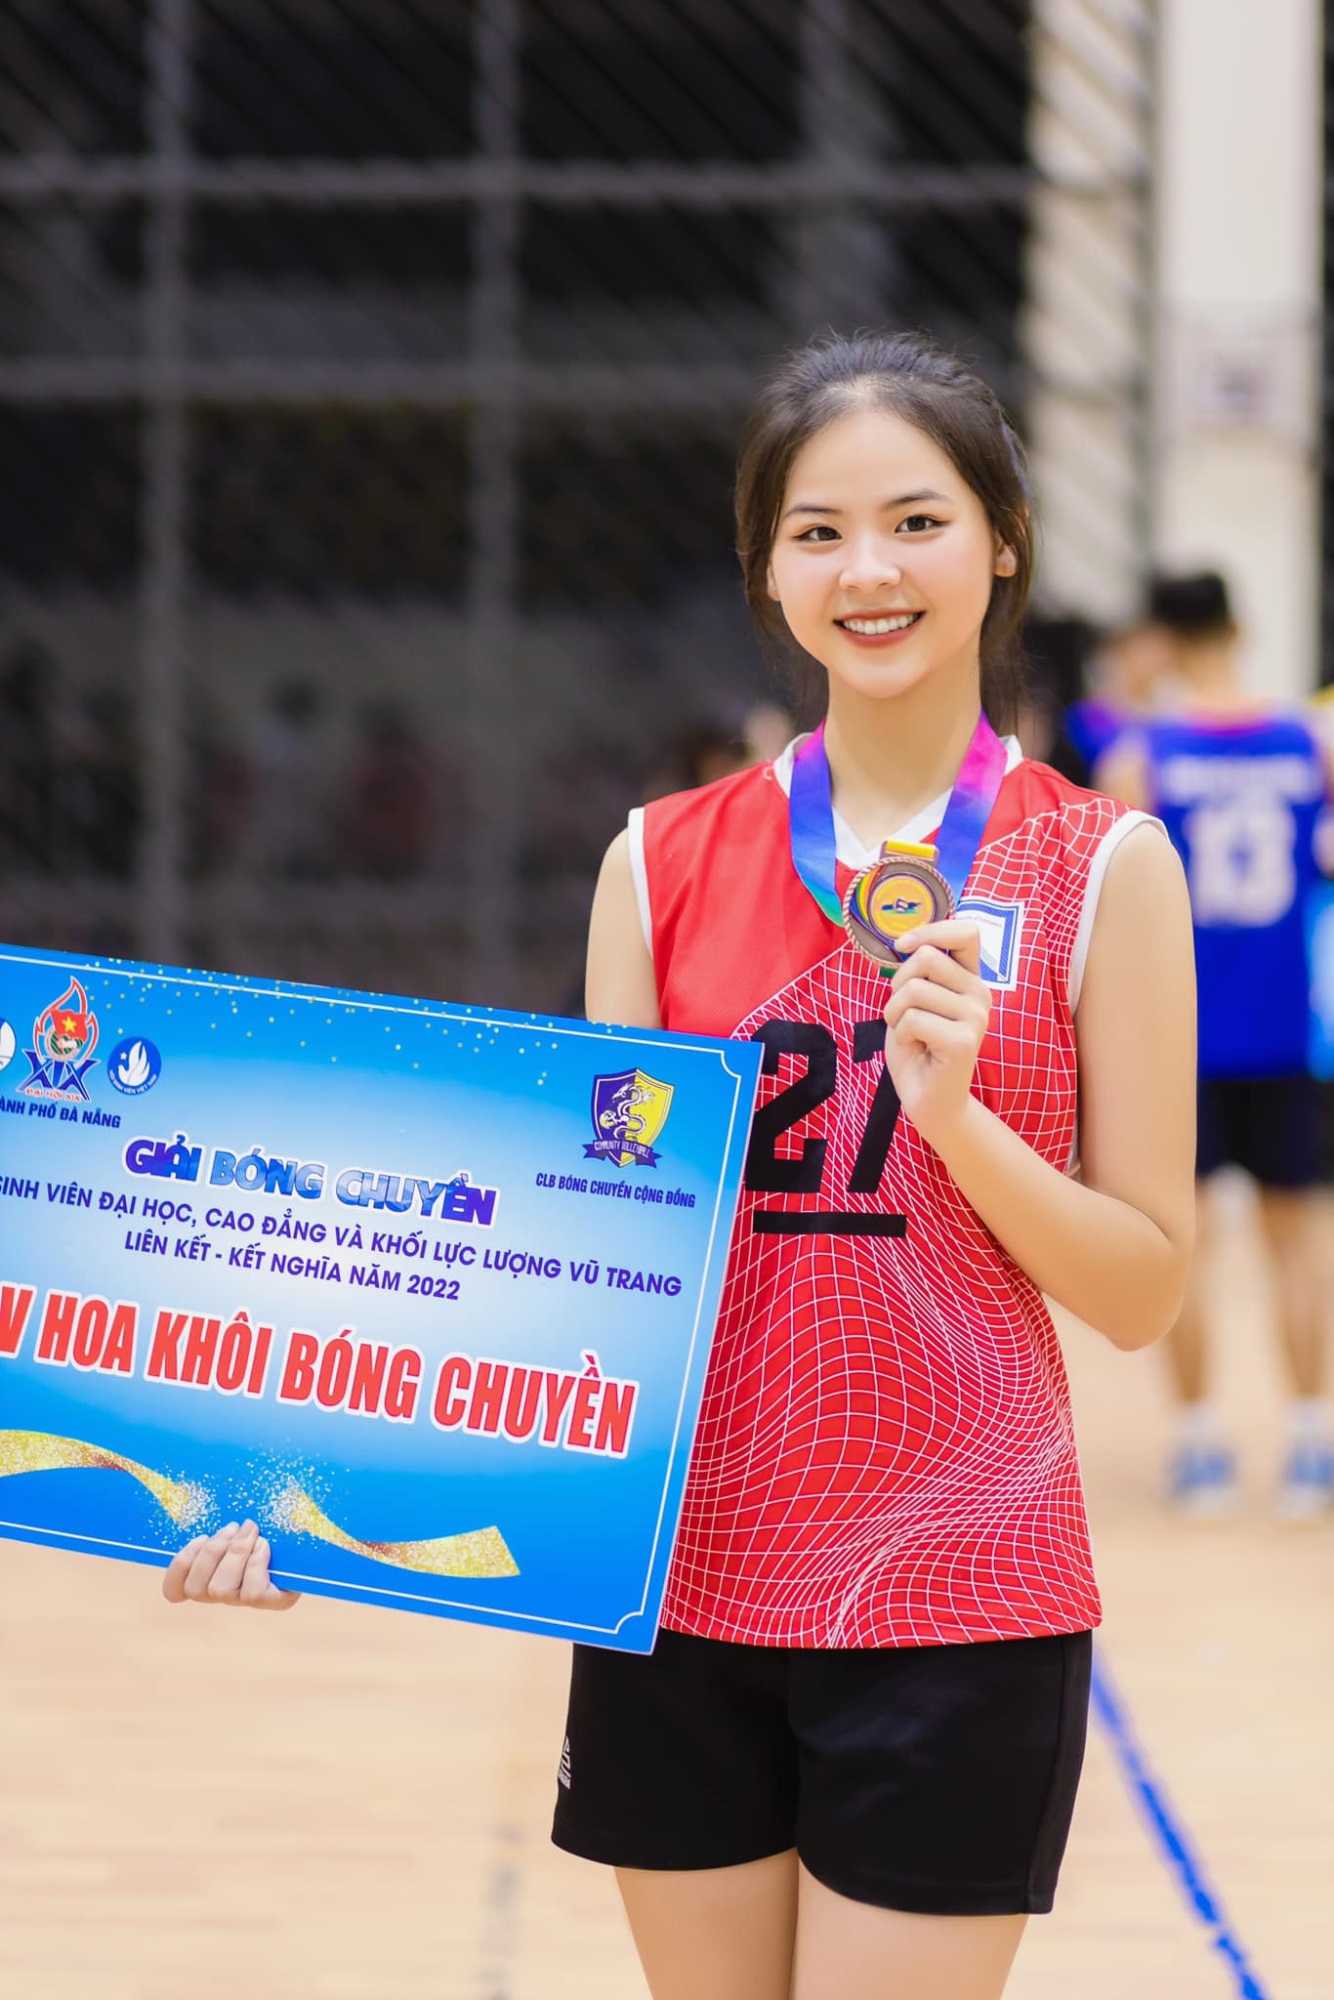 Cận cảnh nhan sắc Hoa khôi bóng chuyền vào vòng chung khảo Miss World Việt Nam 2023 - Ảnh 3